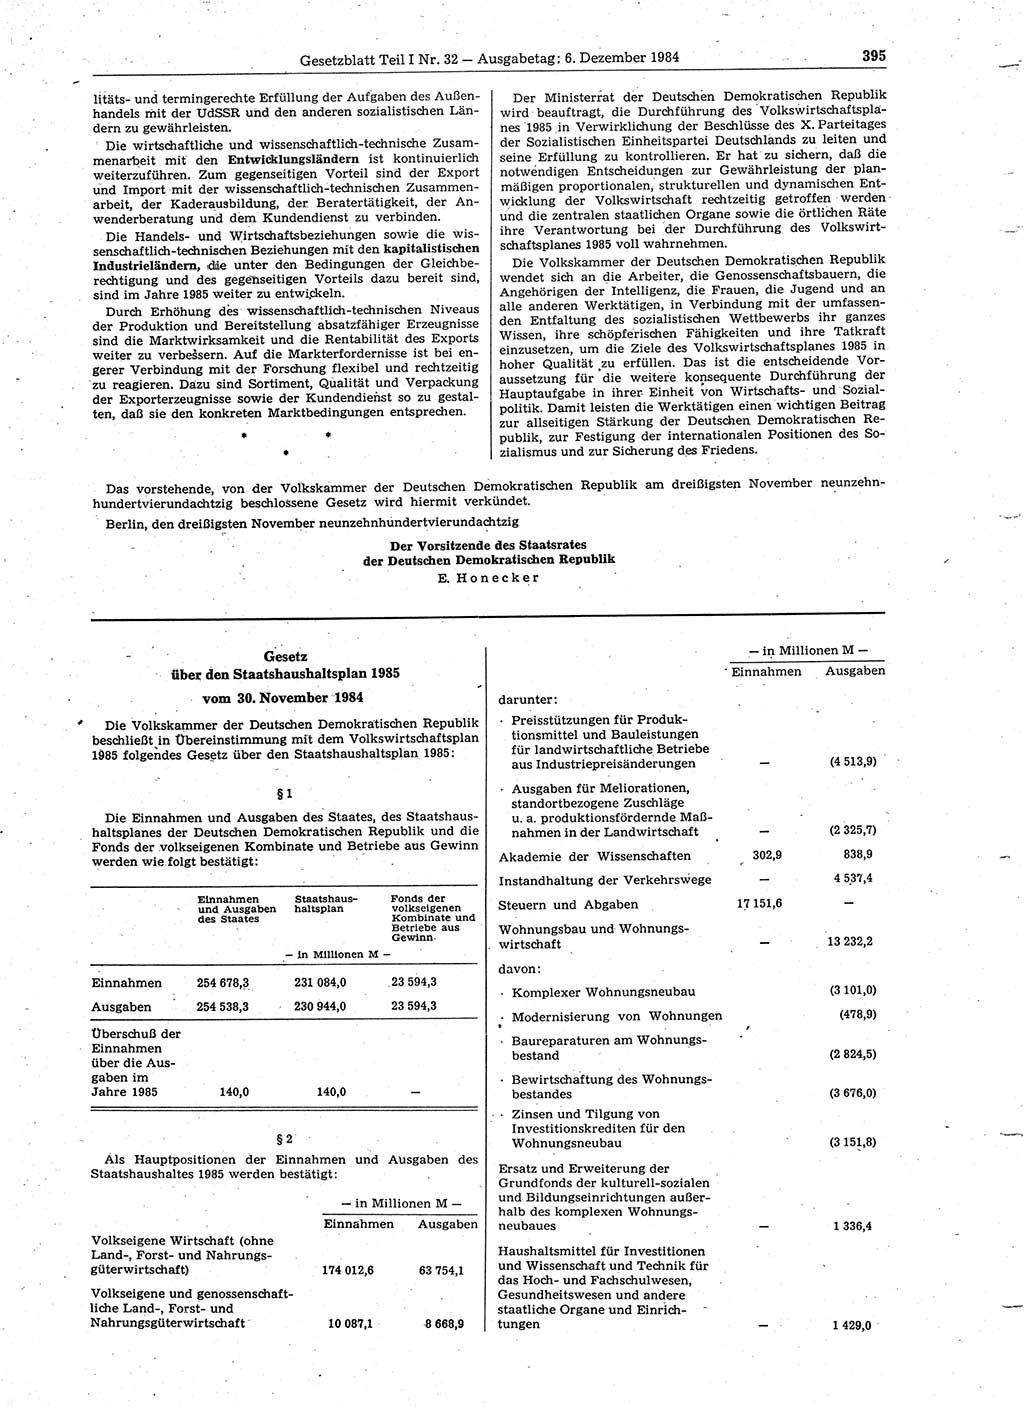 Gesetzblatt (GBl.) der Deutschen Demokratischen Republik (DDR) Teil Ⅰ 1984, Seite 395 (GBl. DDR Ⅰ 1984, S. 395)